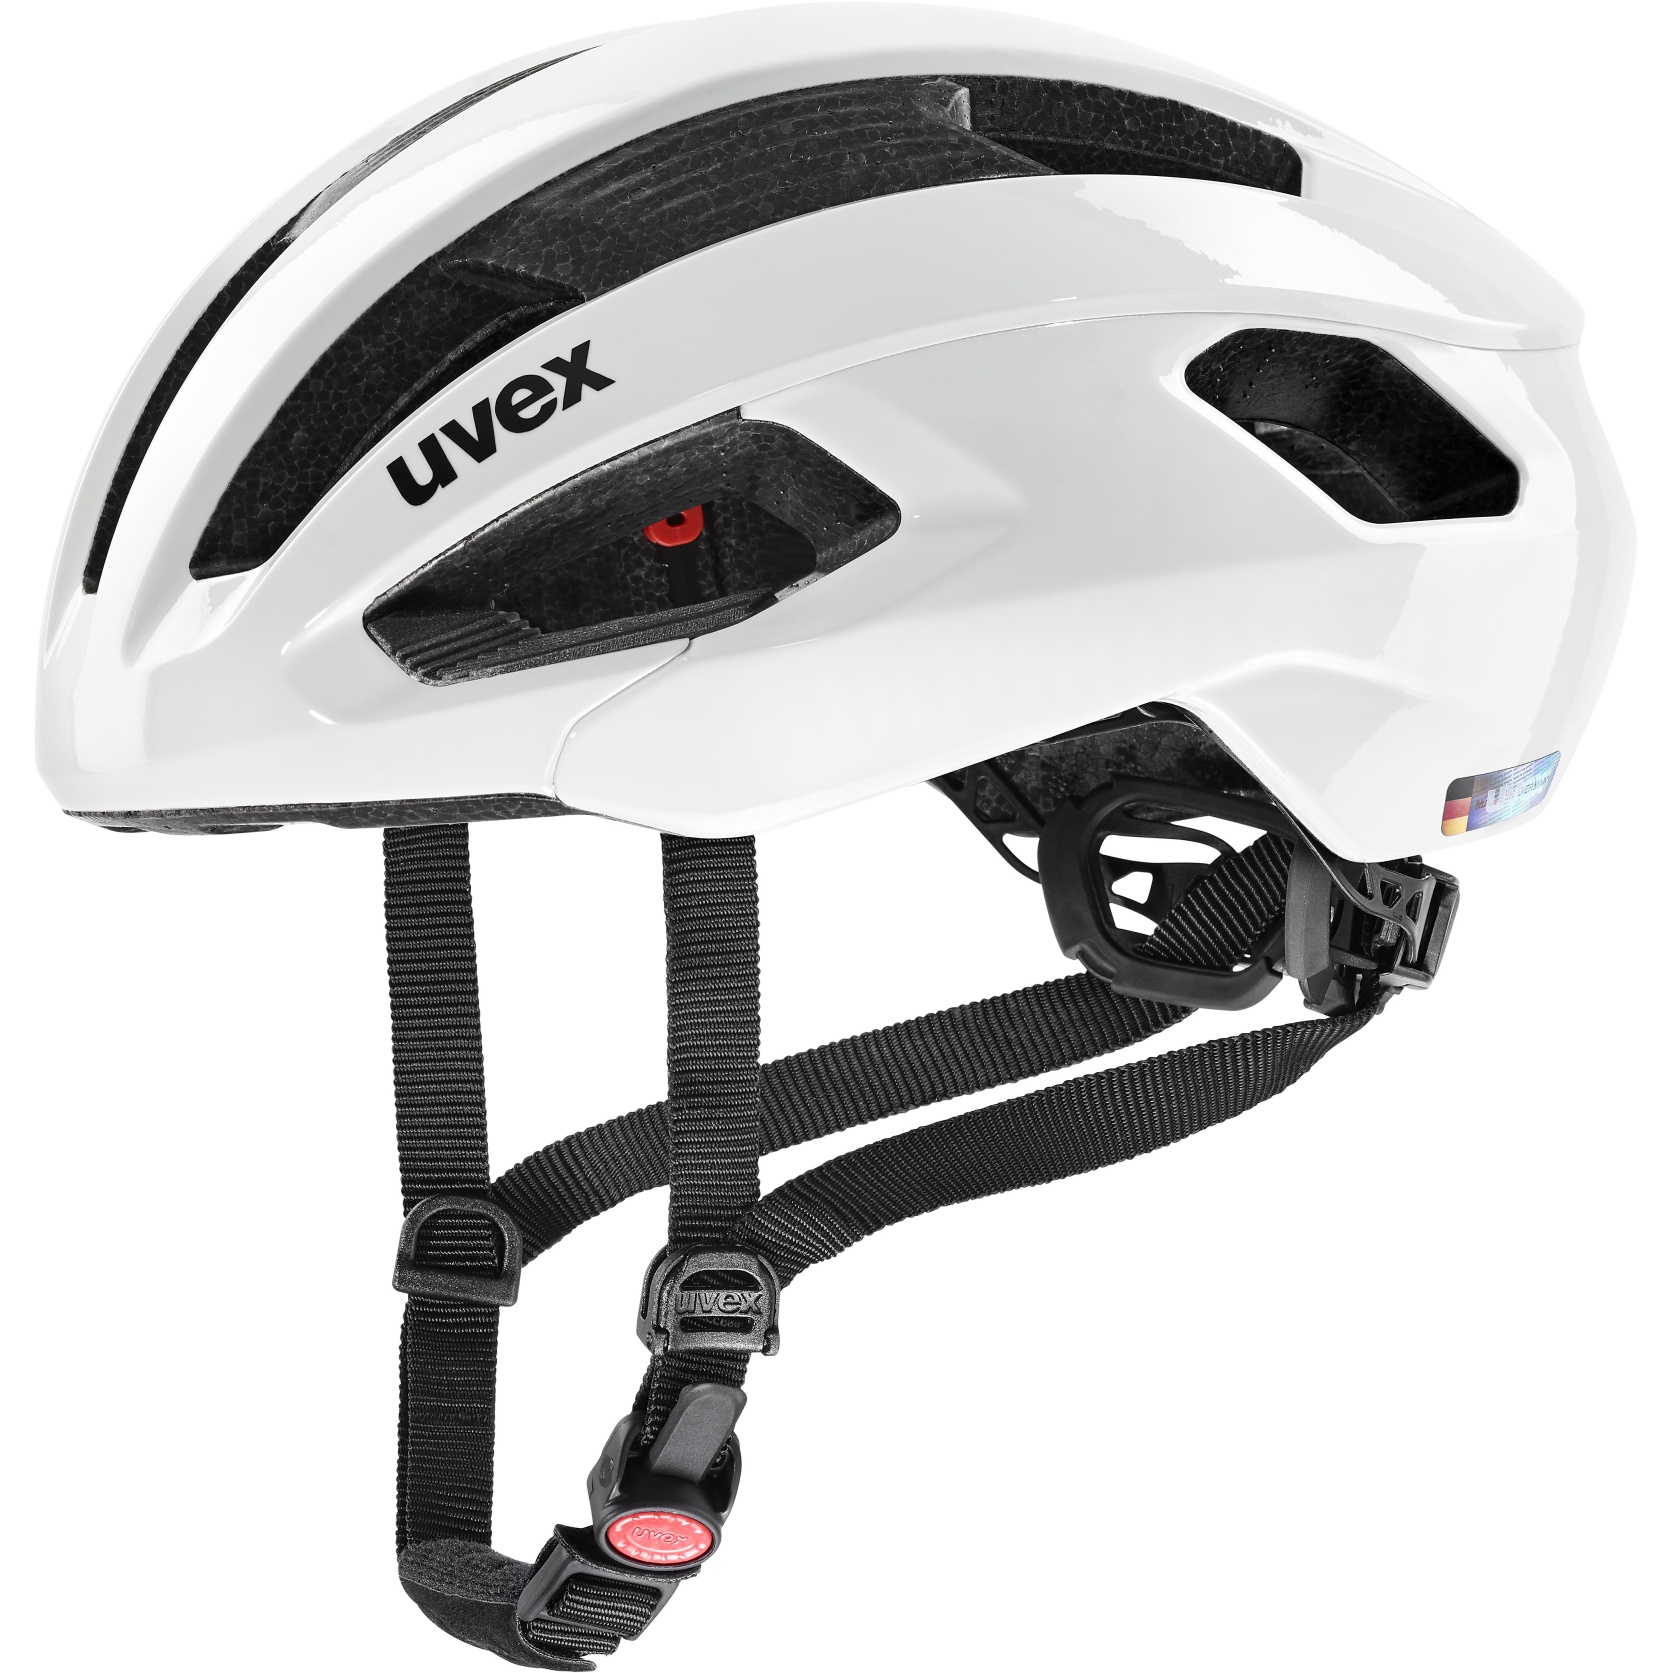 Produktbild von Uvex rise Helm - weiß